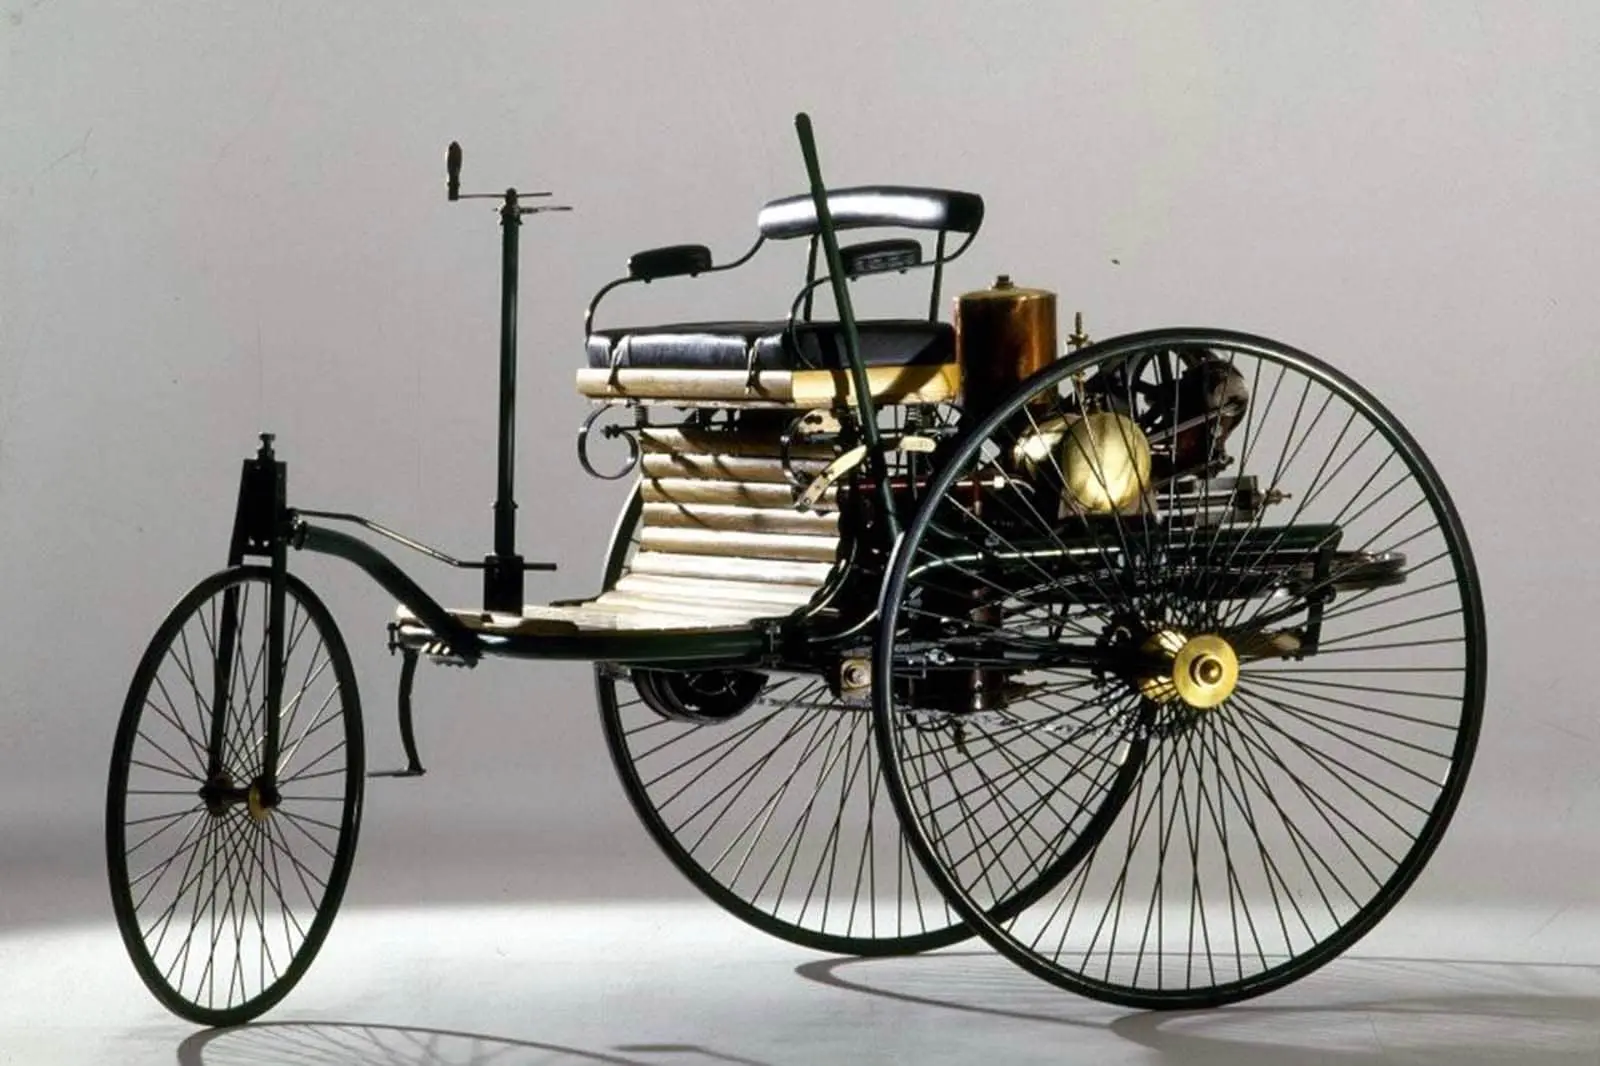 Samochód patentowy Benz z 1886 r